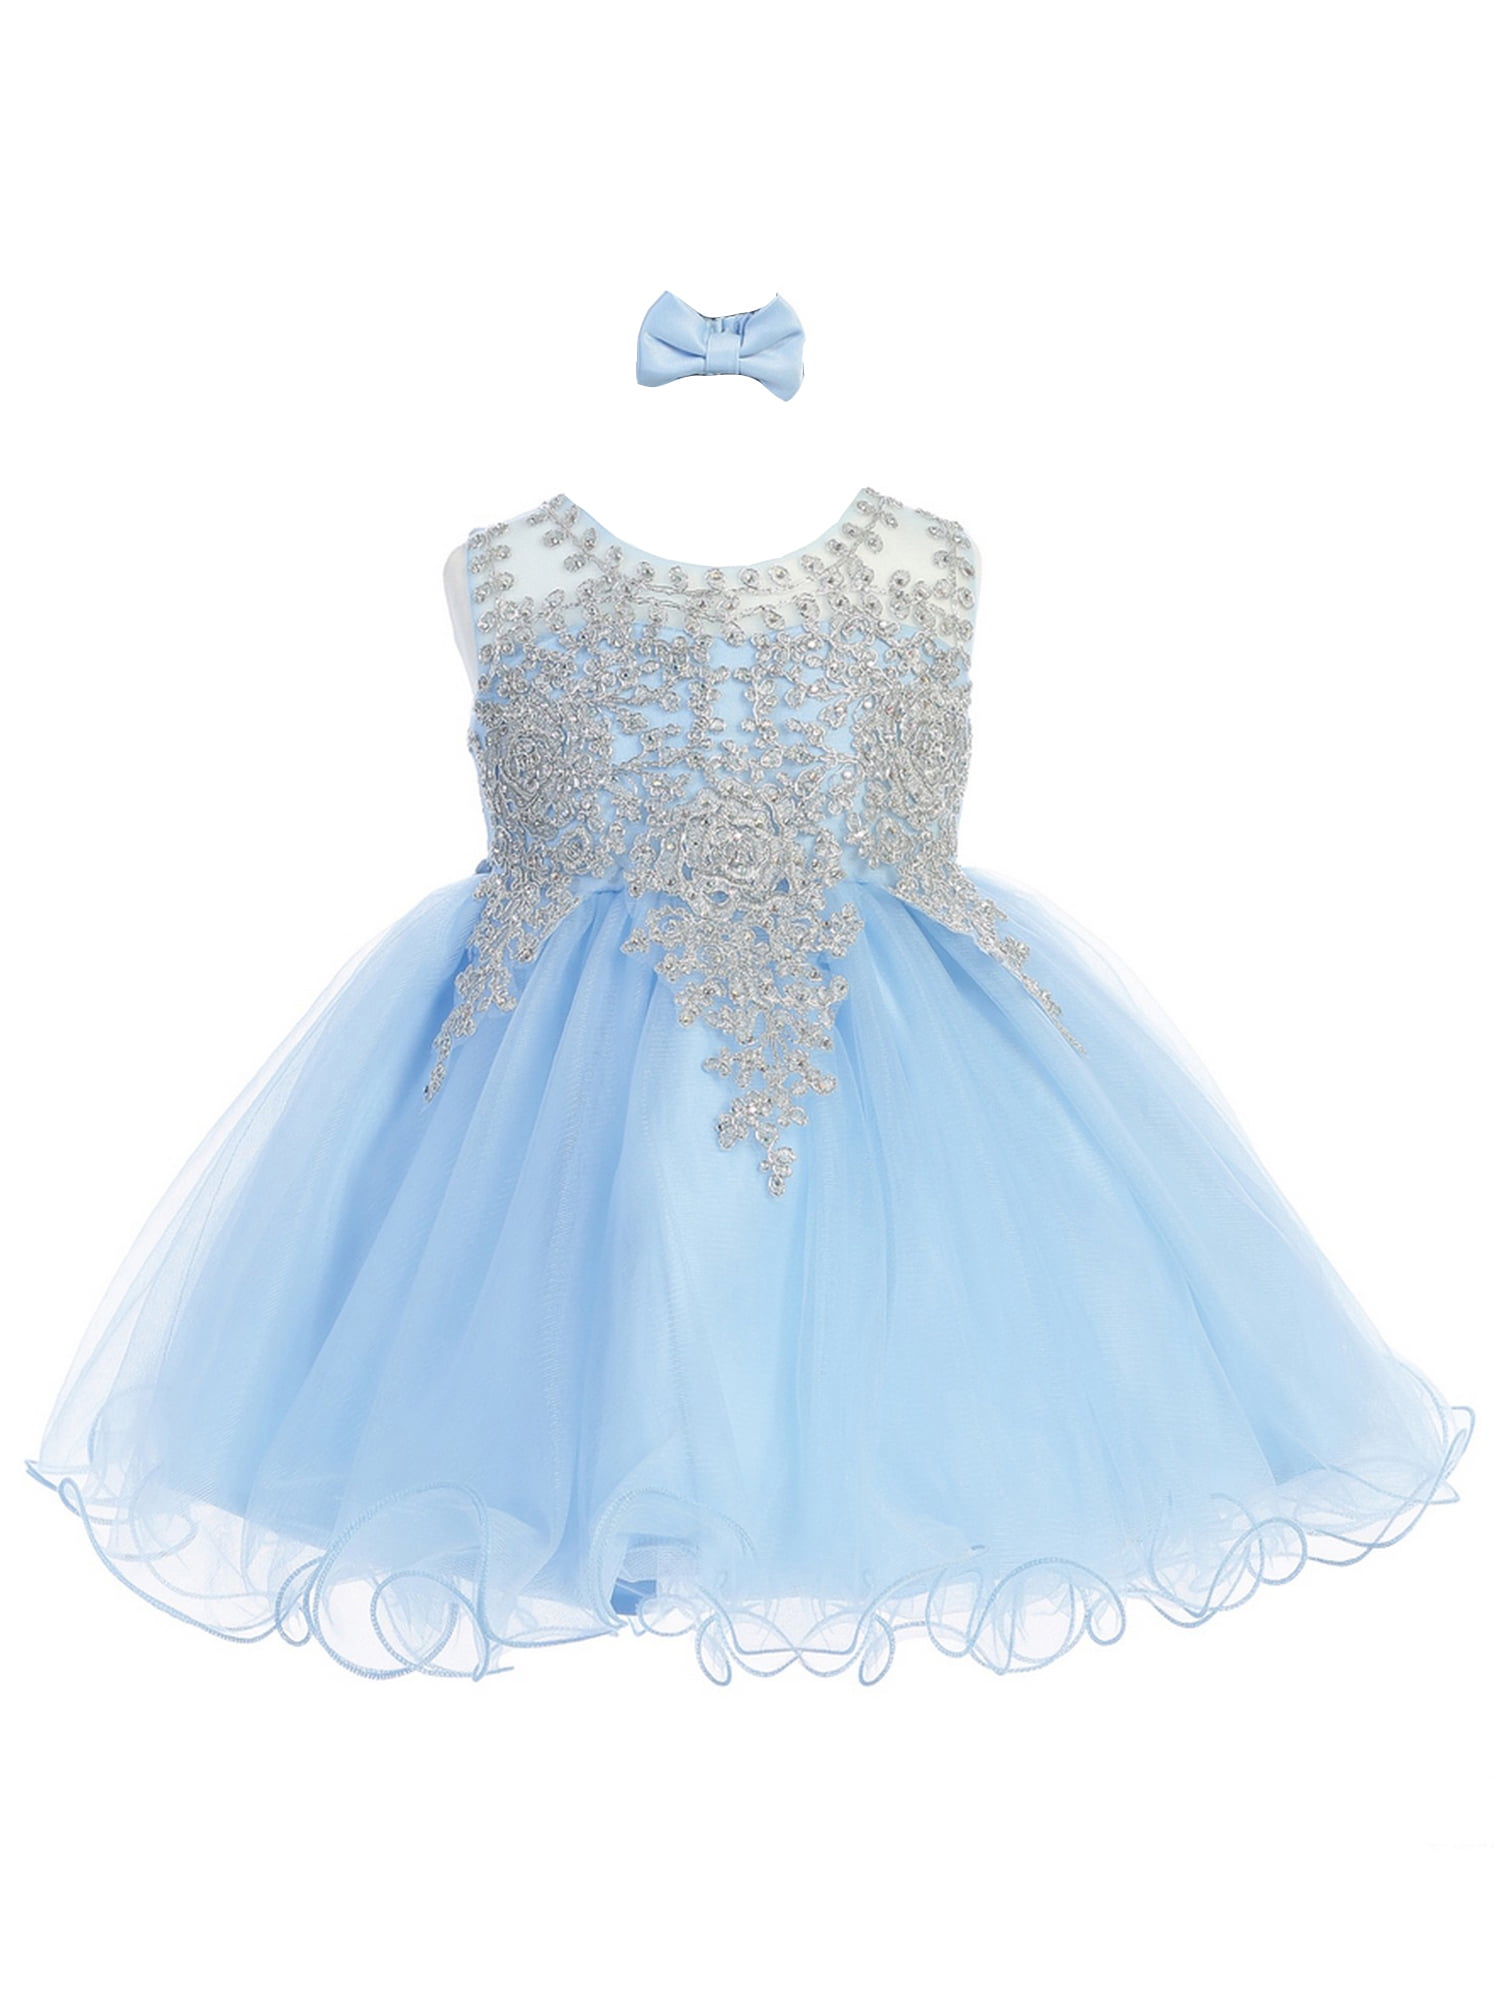 sky blue dress for baby girl